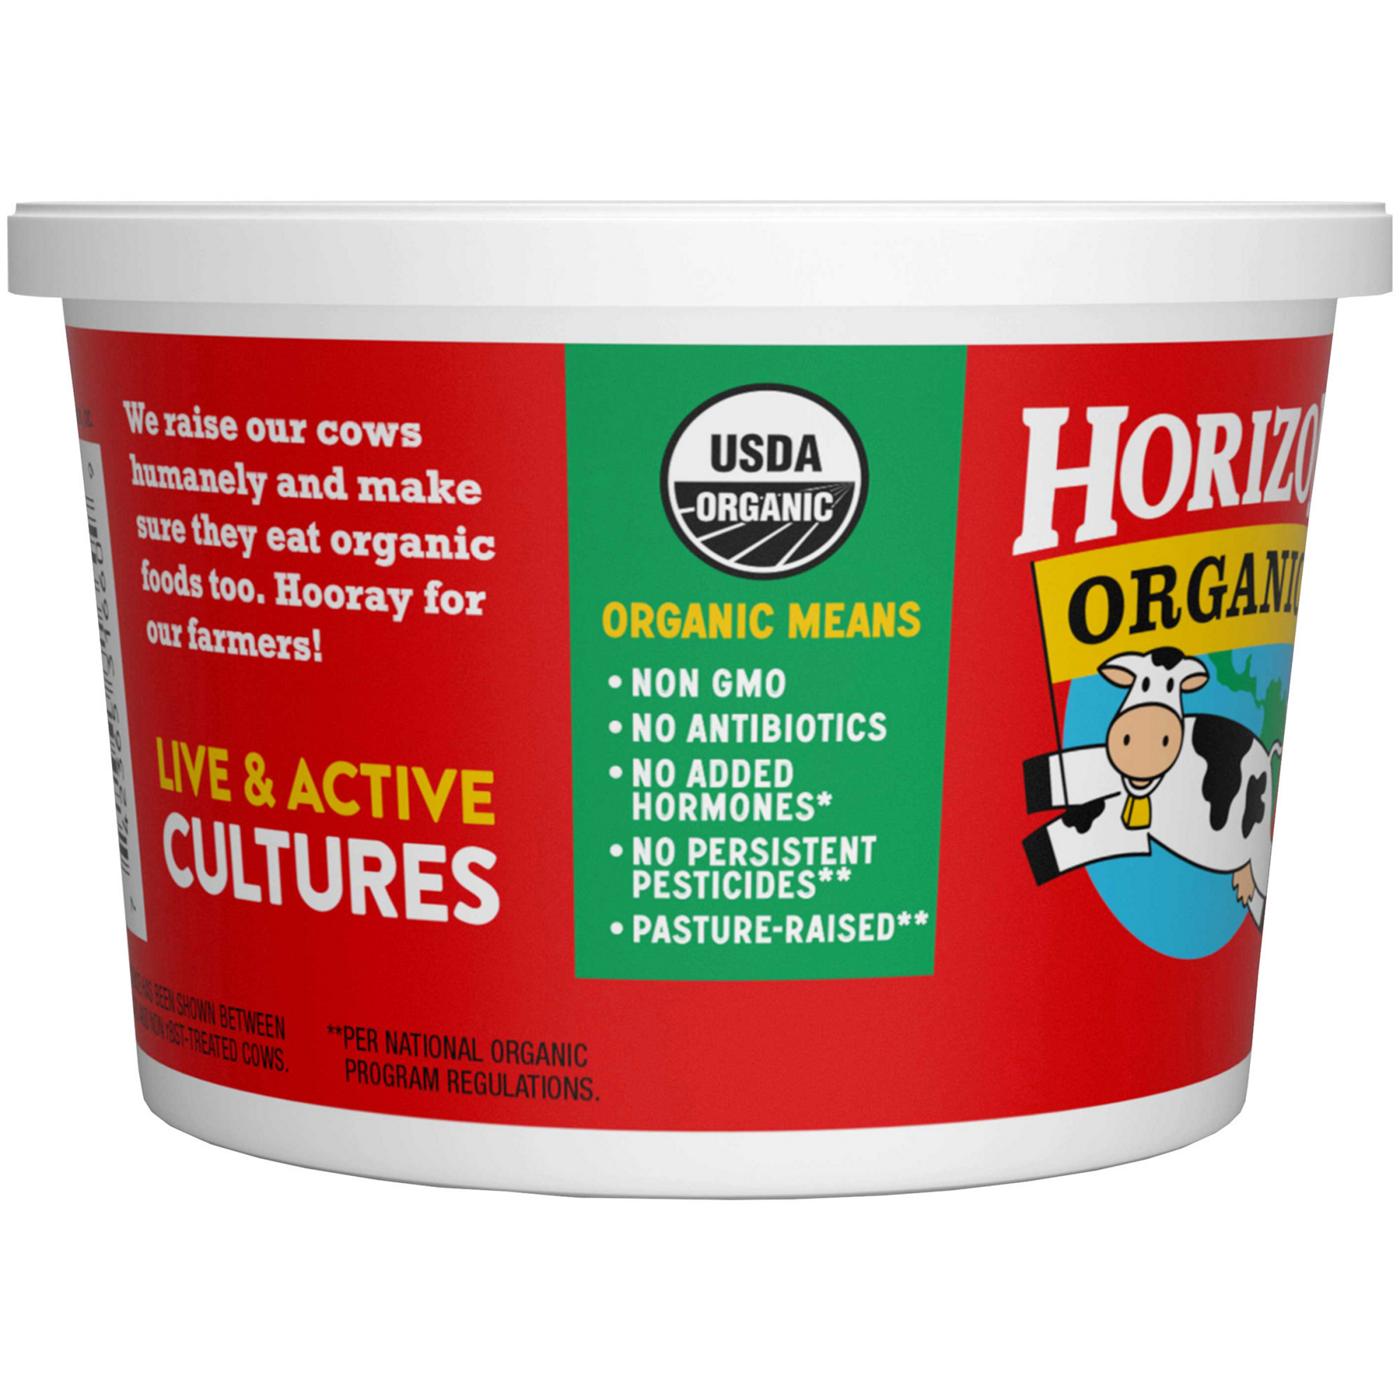 Horizon Organic Cultured Sour Cream; image 5 of 8